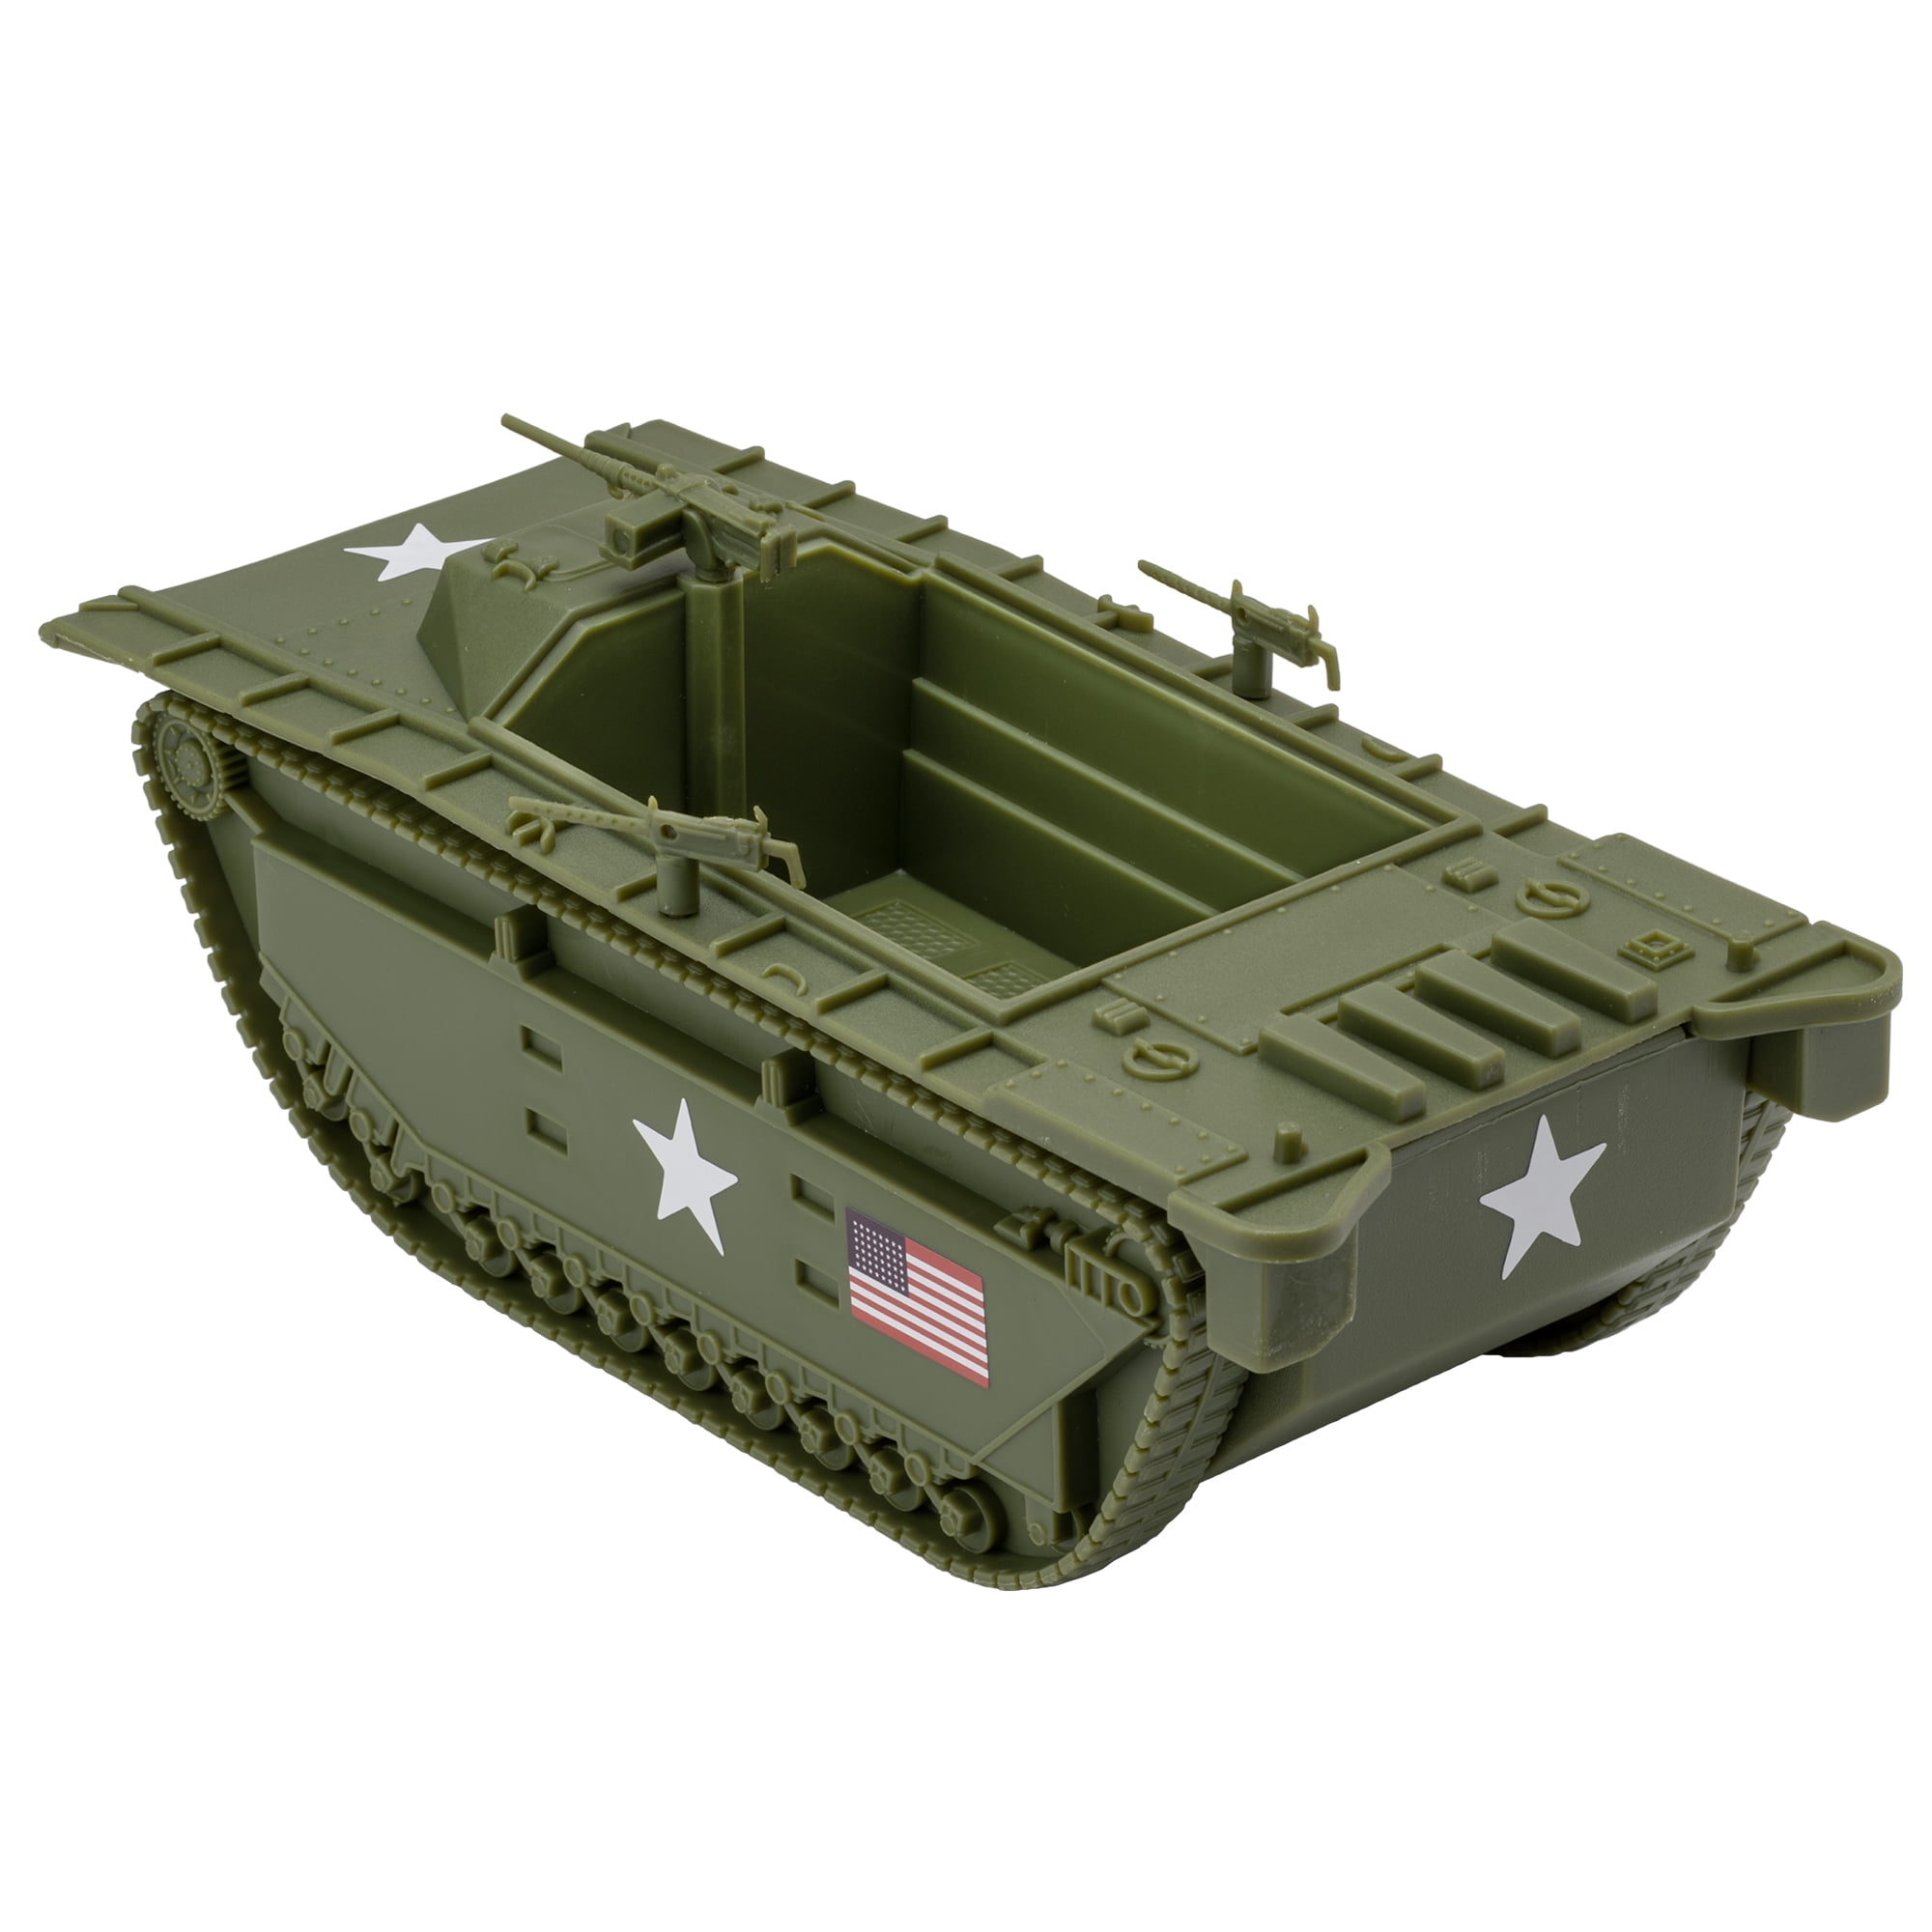 1:32 Amphibious Vehicle for Plastic Army Men Details about   BMC WW2 USMC Amtrac LVT